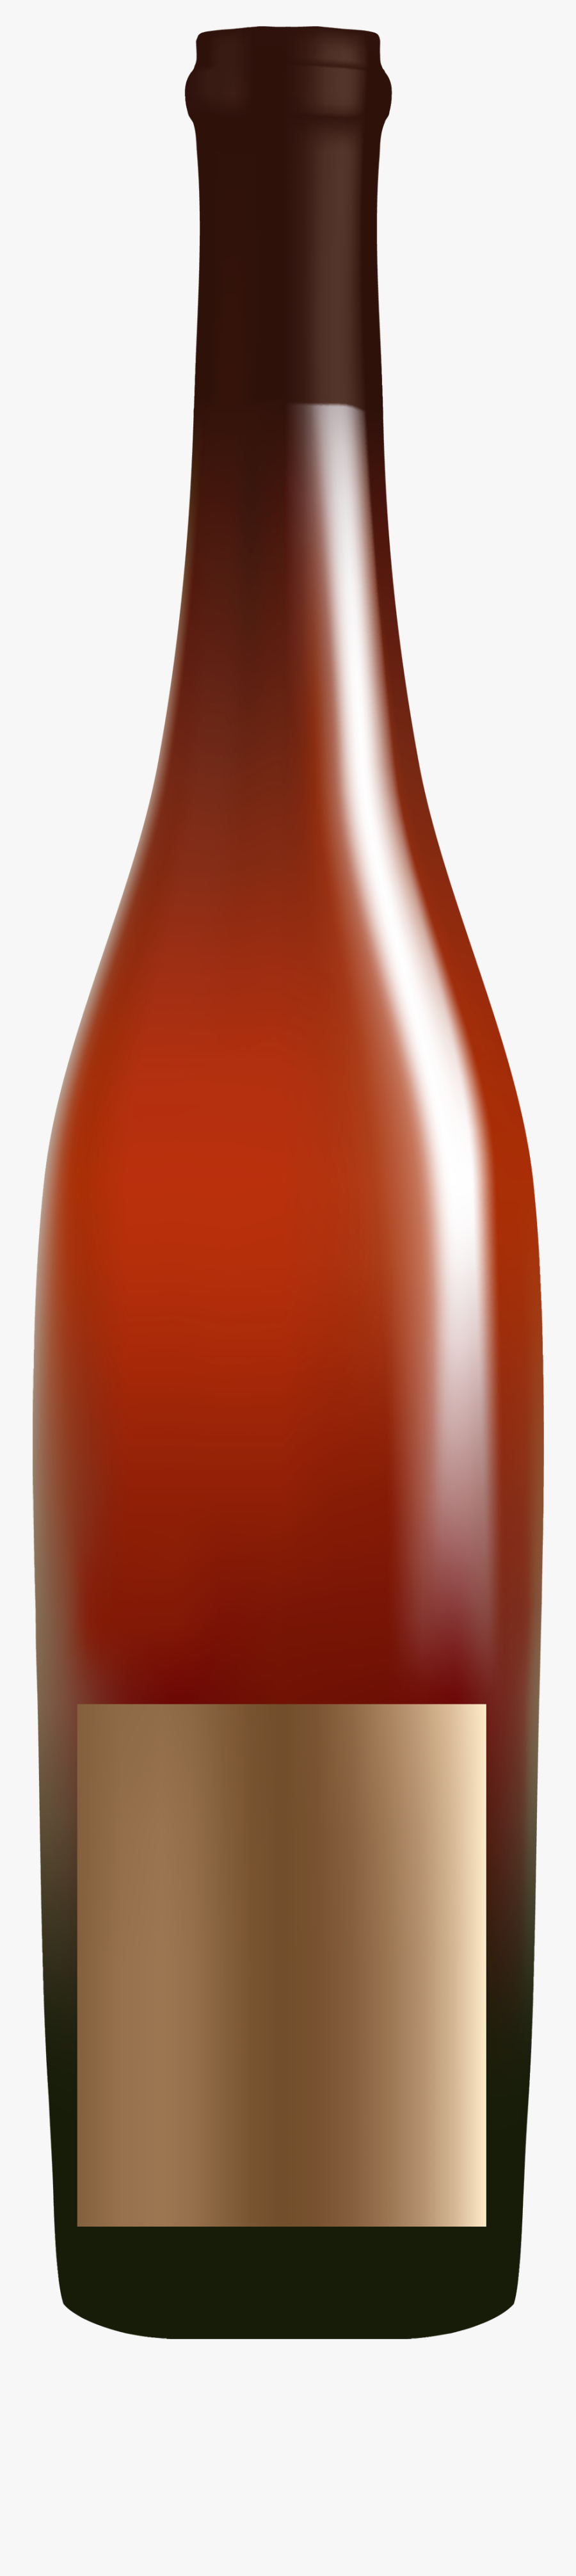 Bottle Clipart Alcohol - Alcohol In A Bottle Clipart, Transparent Clipart